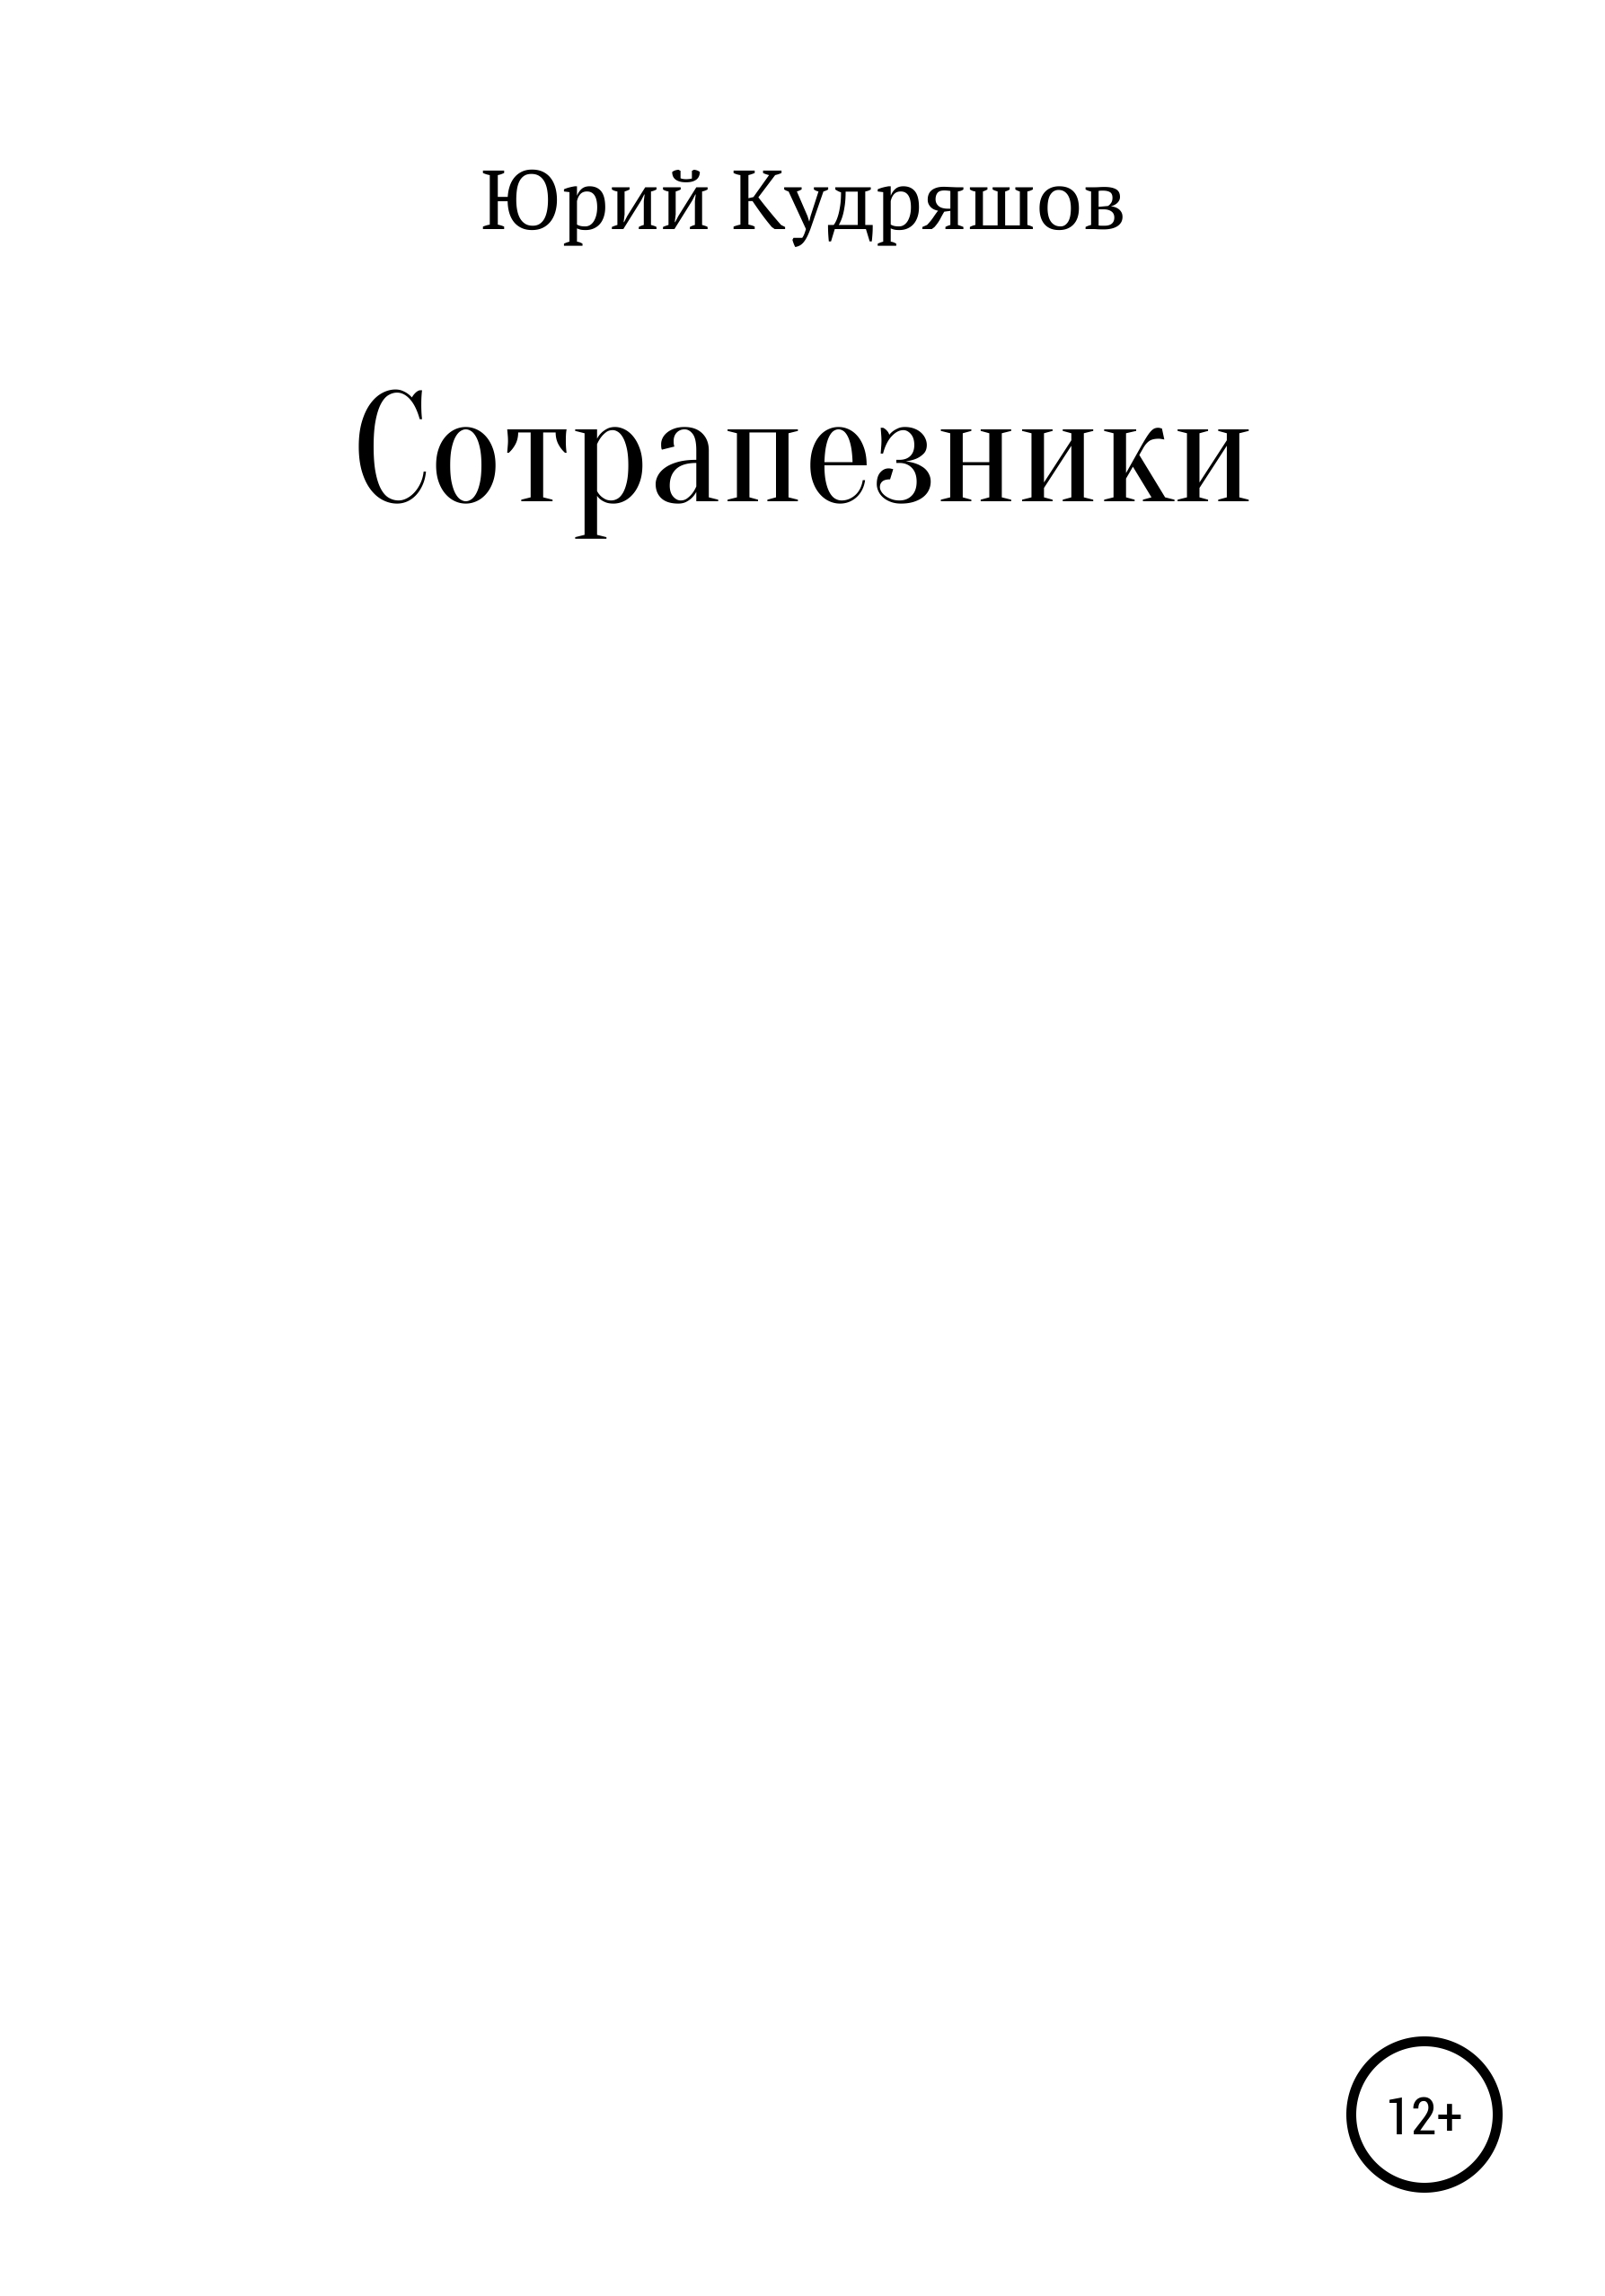 Книга Сотрапезники из серии , созданная Юрий Кудряшов, может относится к жанру Музыка, балет, Современная русская литература. Стоимость книги Сотрапезники  с идентификатором 29408561 составляет 0 руб.